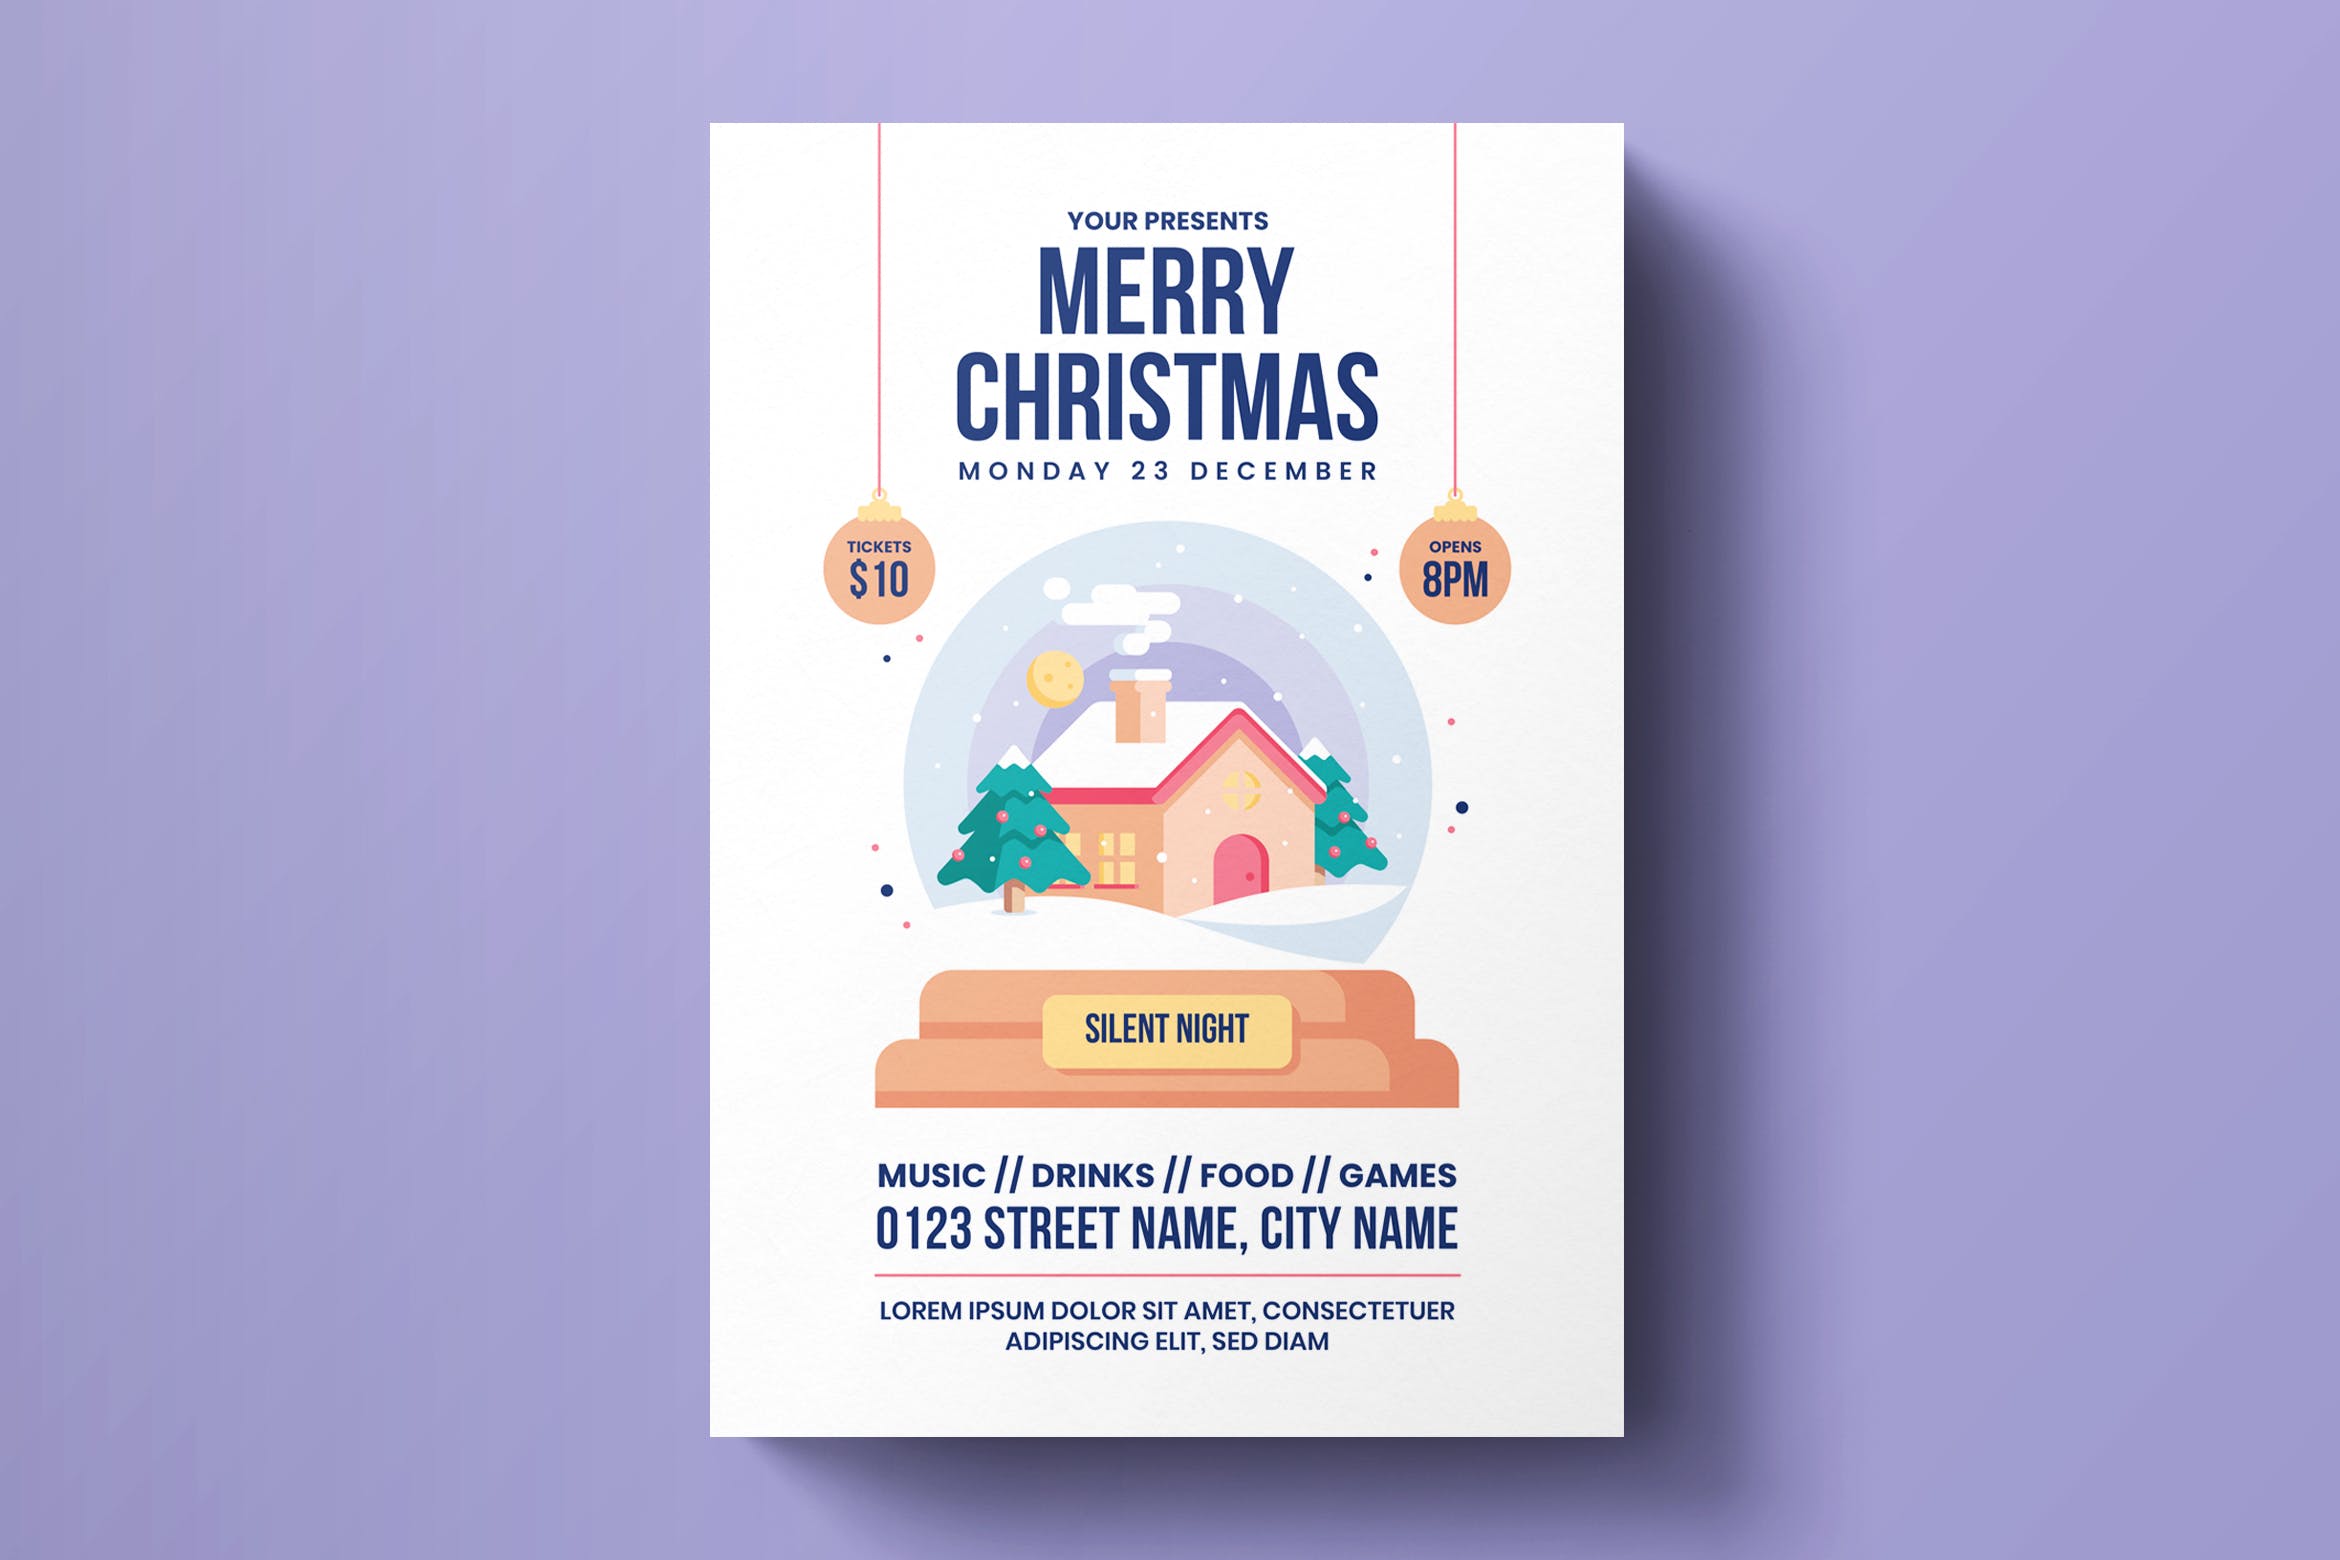 圣诞节主题活动门票海报传单设计模板素材 Christmas Flyer Template插图